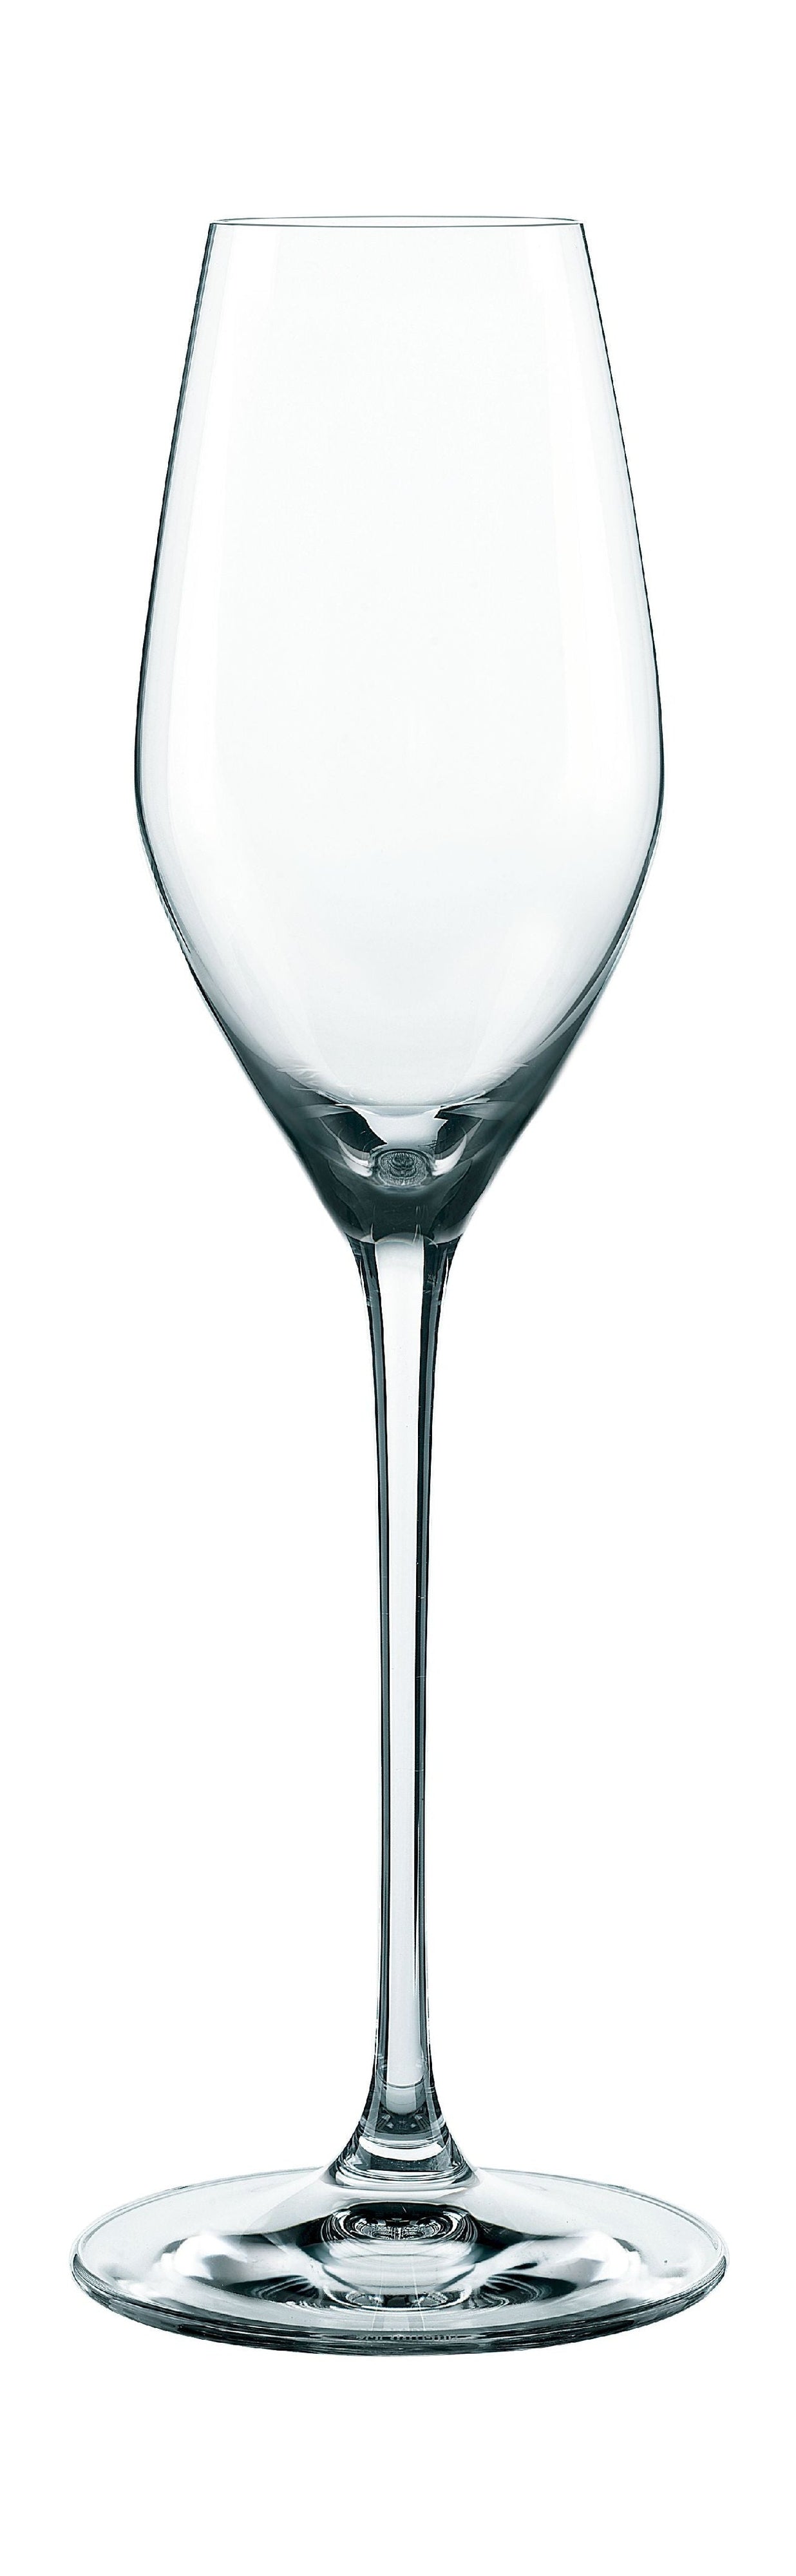 Nachtmann Supreme Xl Champagne Glasses 300 Ml, Set Of 4